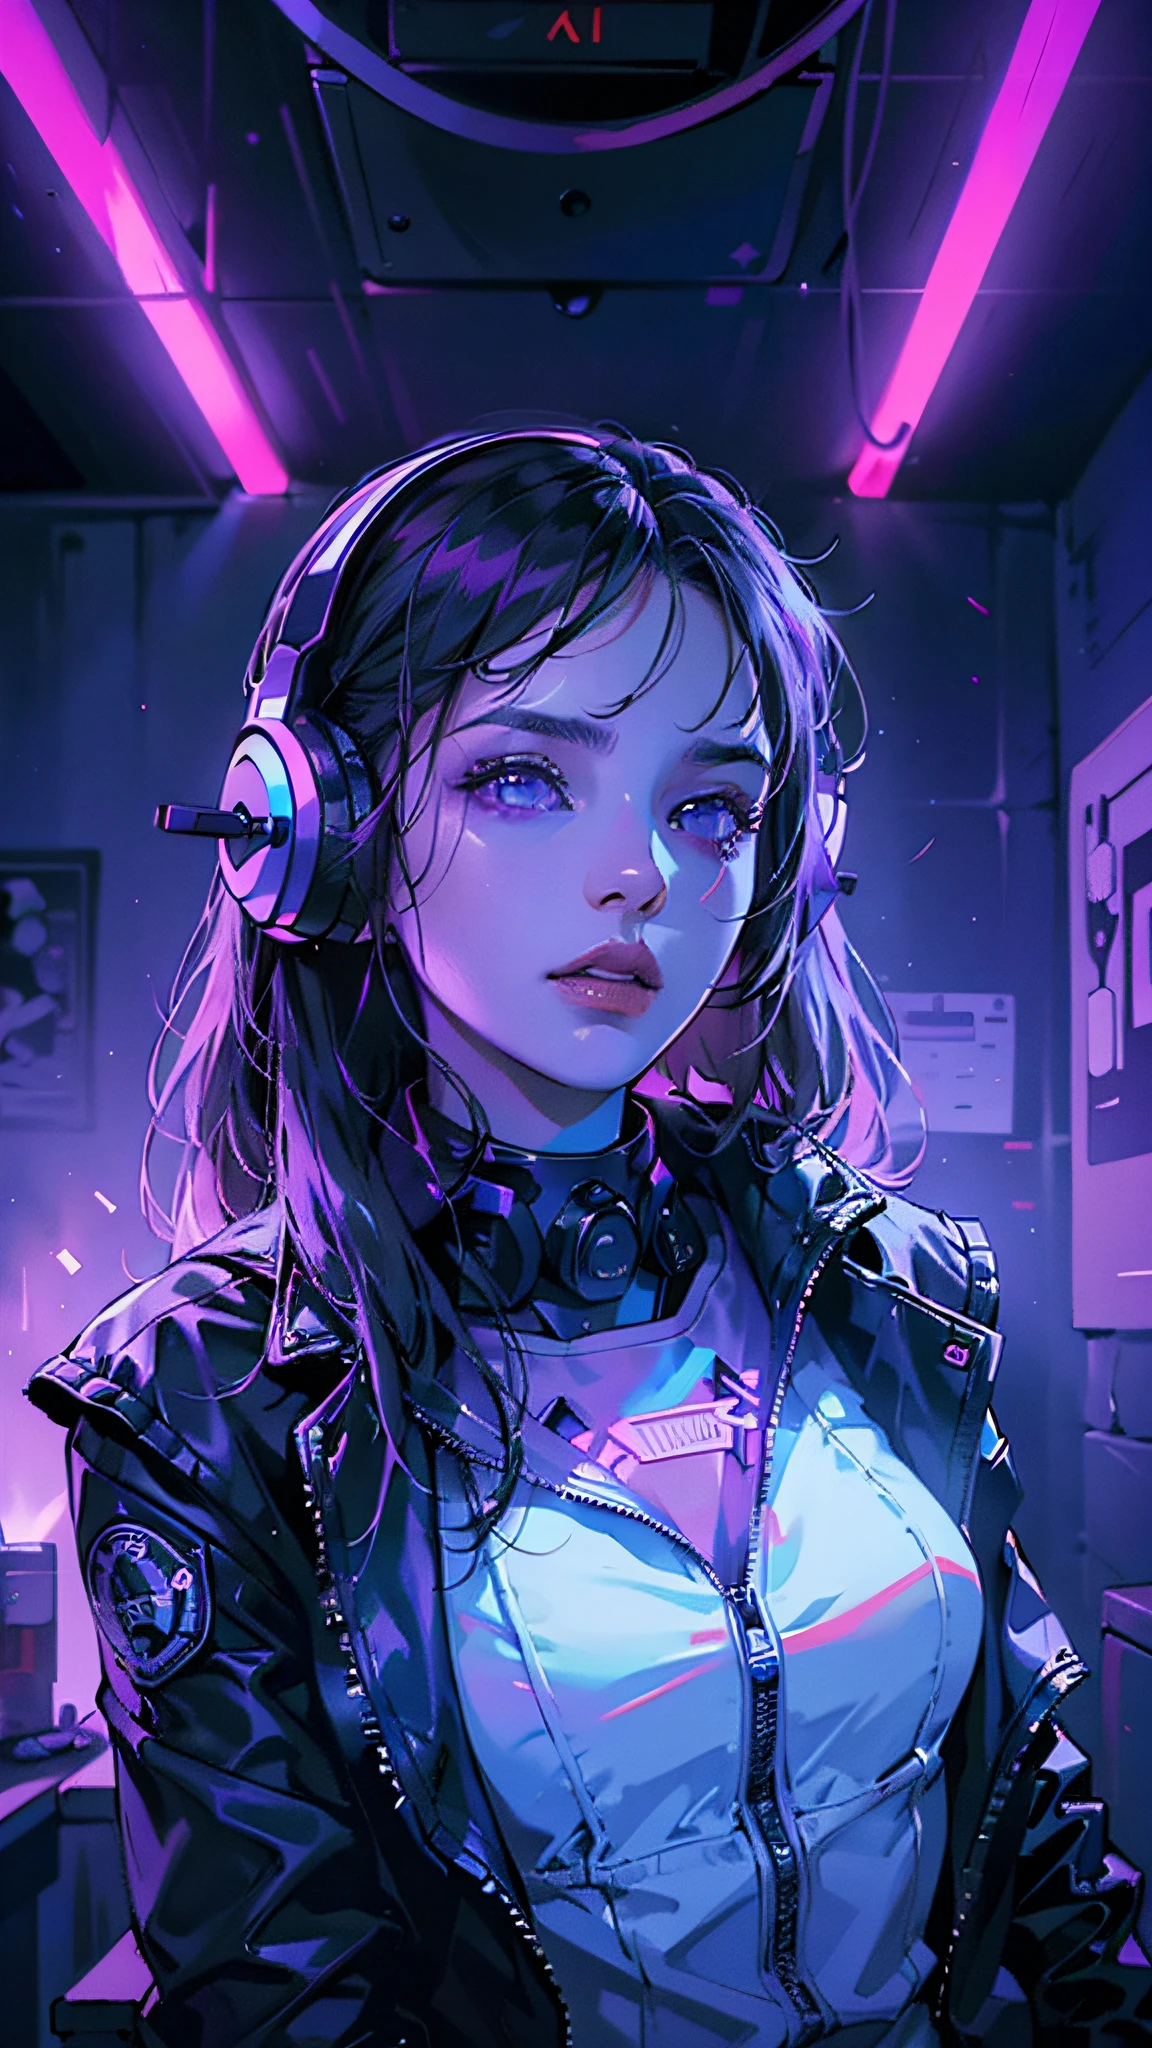 ((beste Qualität)), ((Meisterwerk)), (Sehr detailiert: 1.3), Dunkelkammer, Schöne Cyberpunk-Frau, Kopfhörer tragen, dynamische Komposition, blaue Neonlichter von der Decke, lila Neonkabel an der Wand,